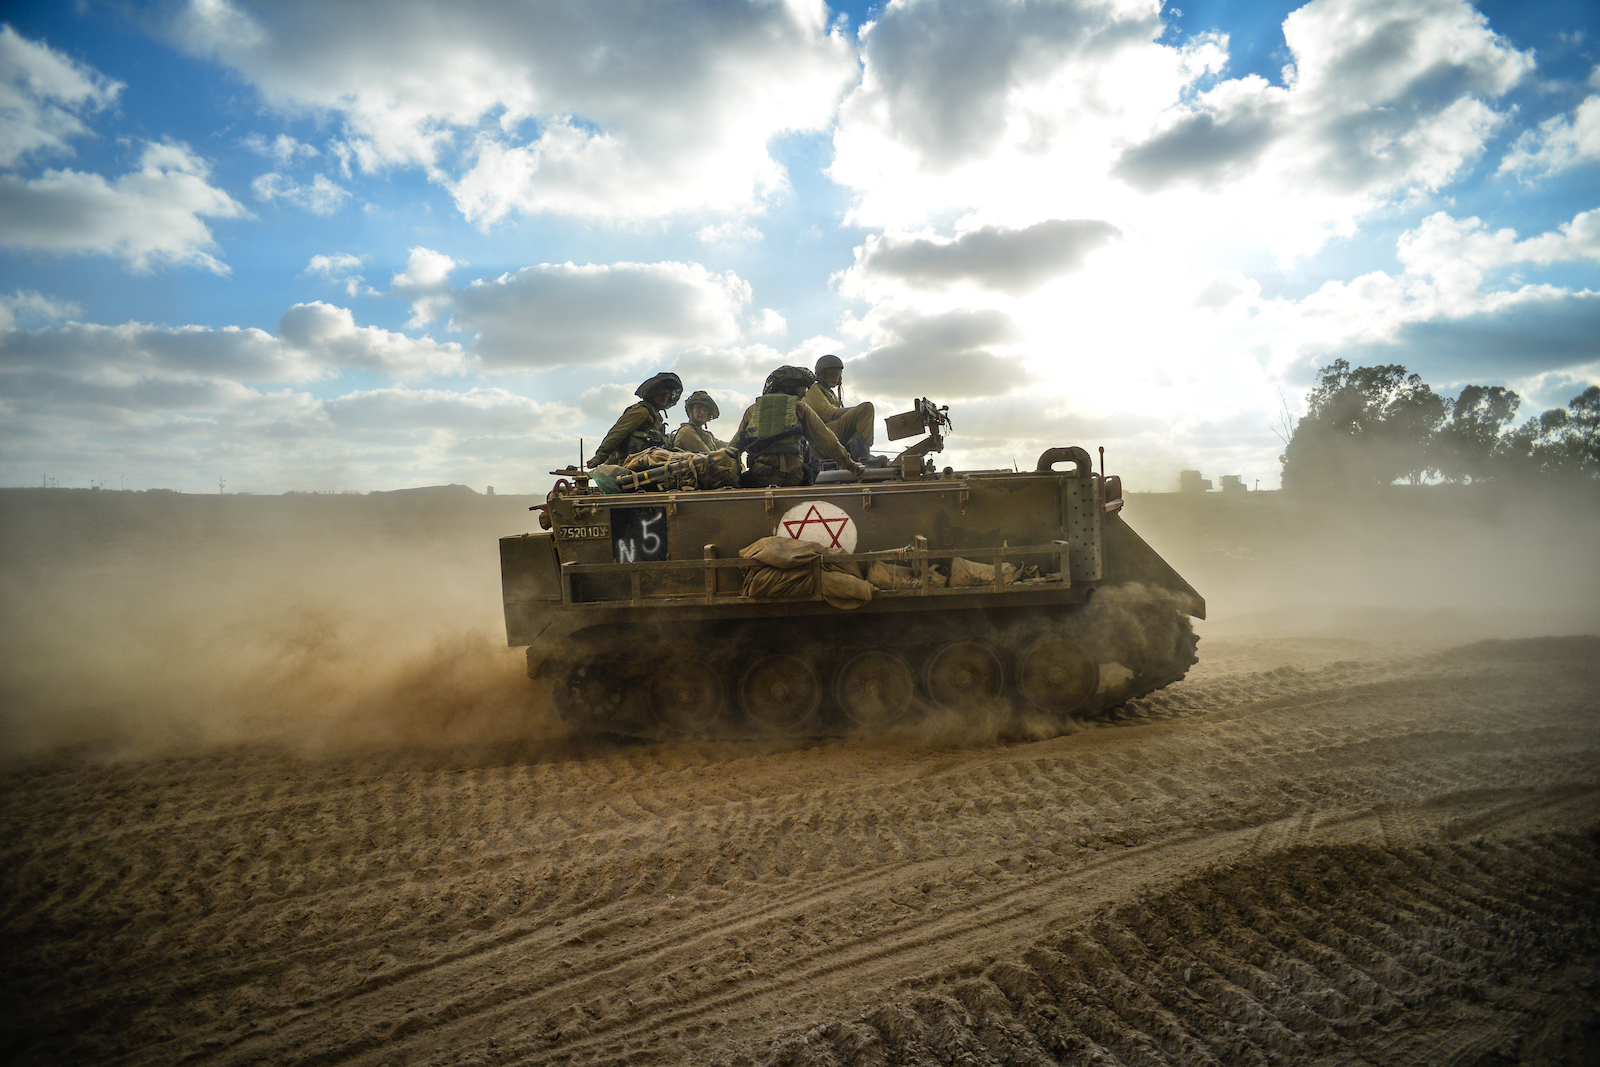 Israeli tank in Gaza